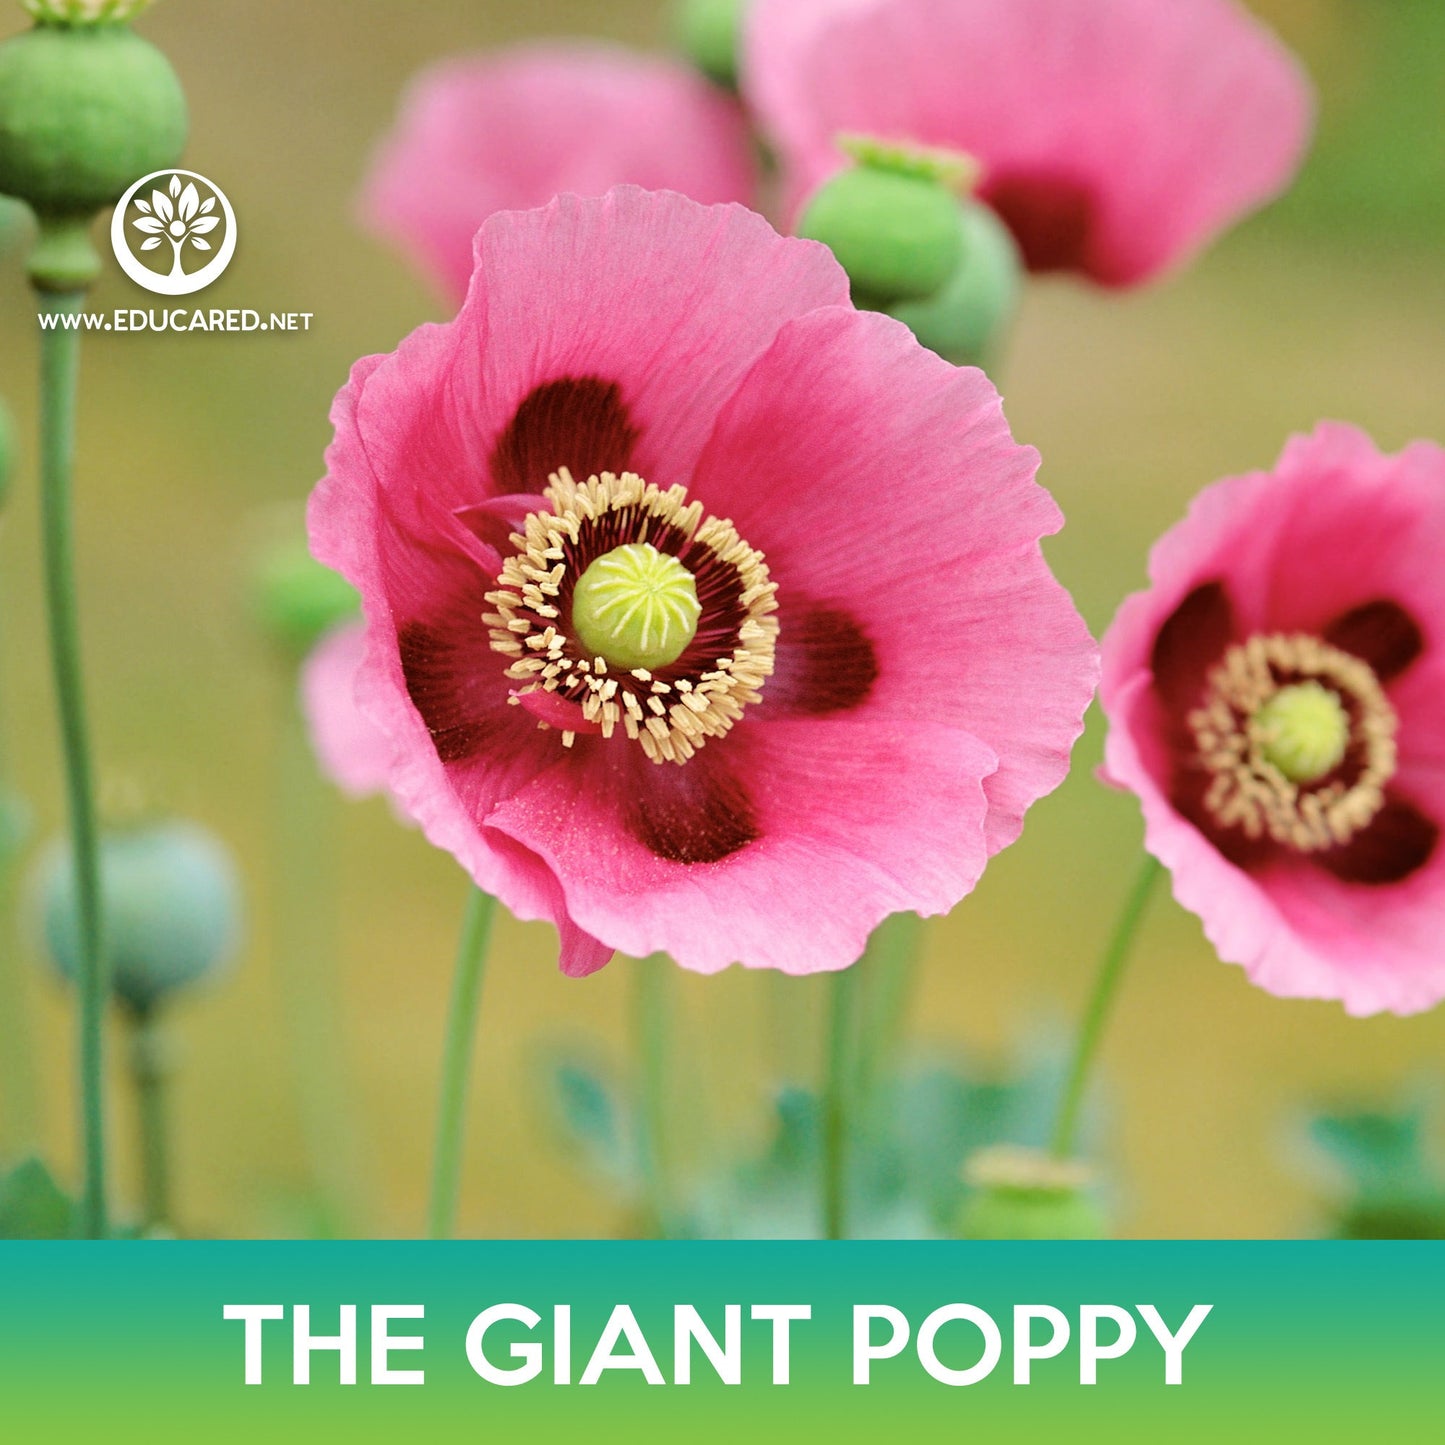 The Giant Poppy Flower Seeds